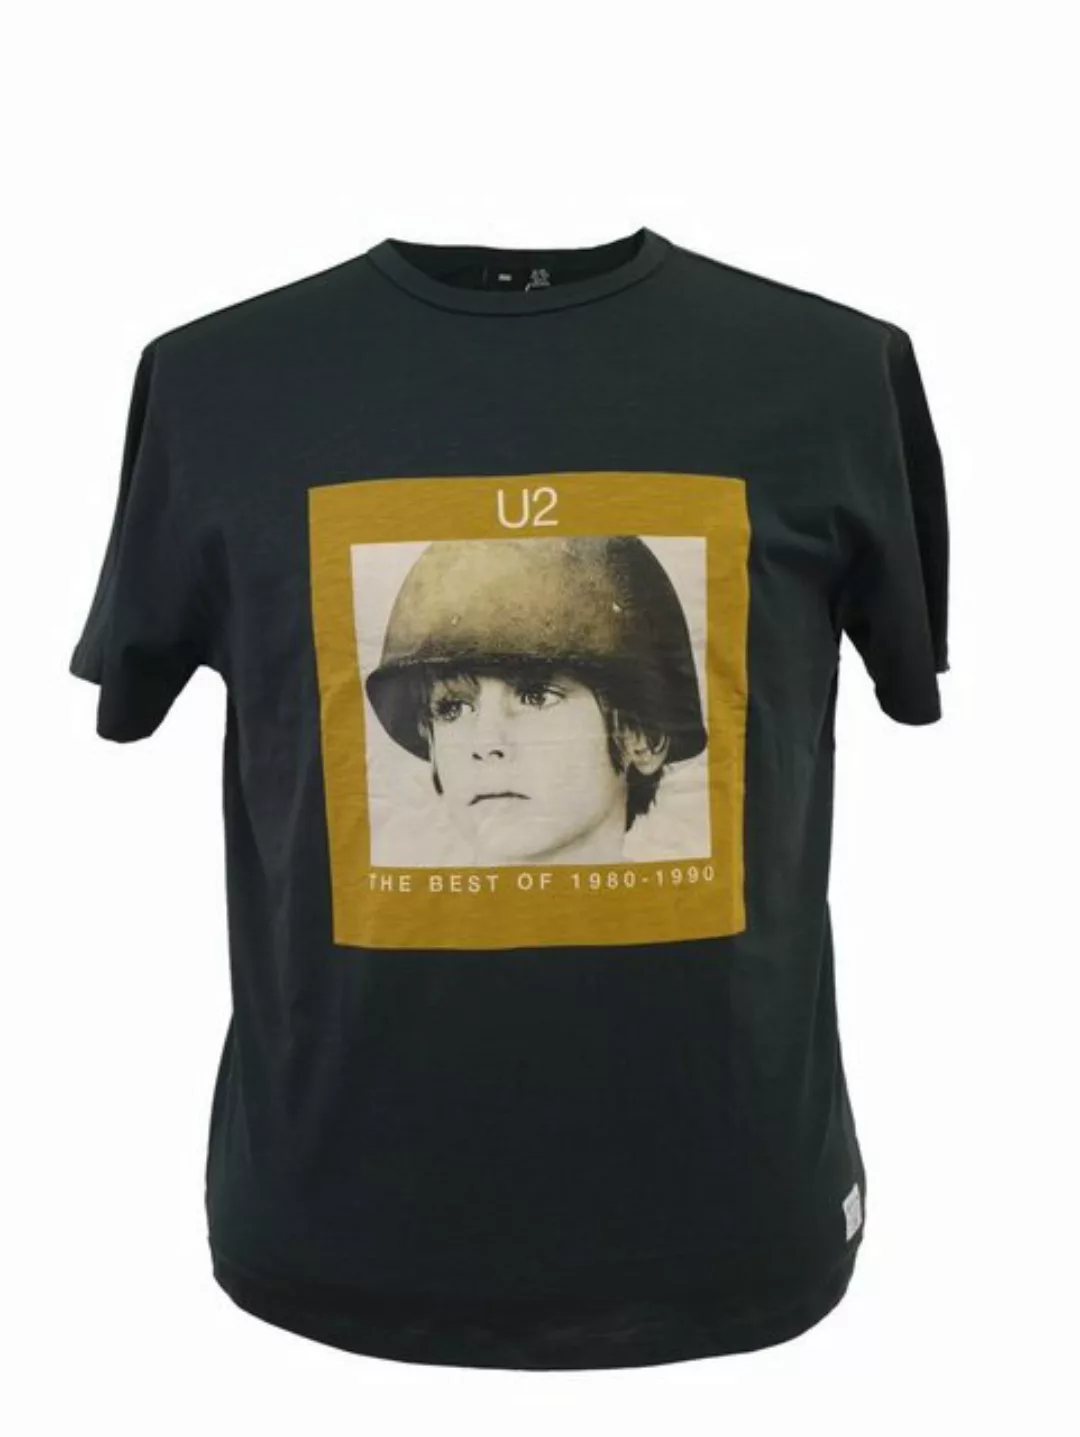 replika T-Shirt Replika XXL Shirt U2 "THE BEST OF" 1980-1990 günstig online kaufen